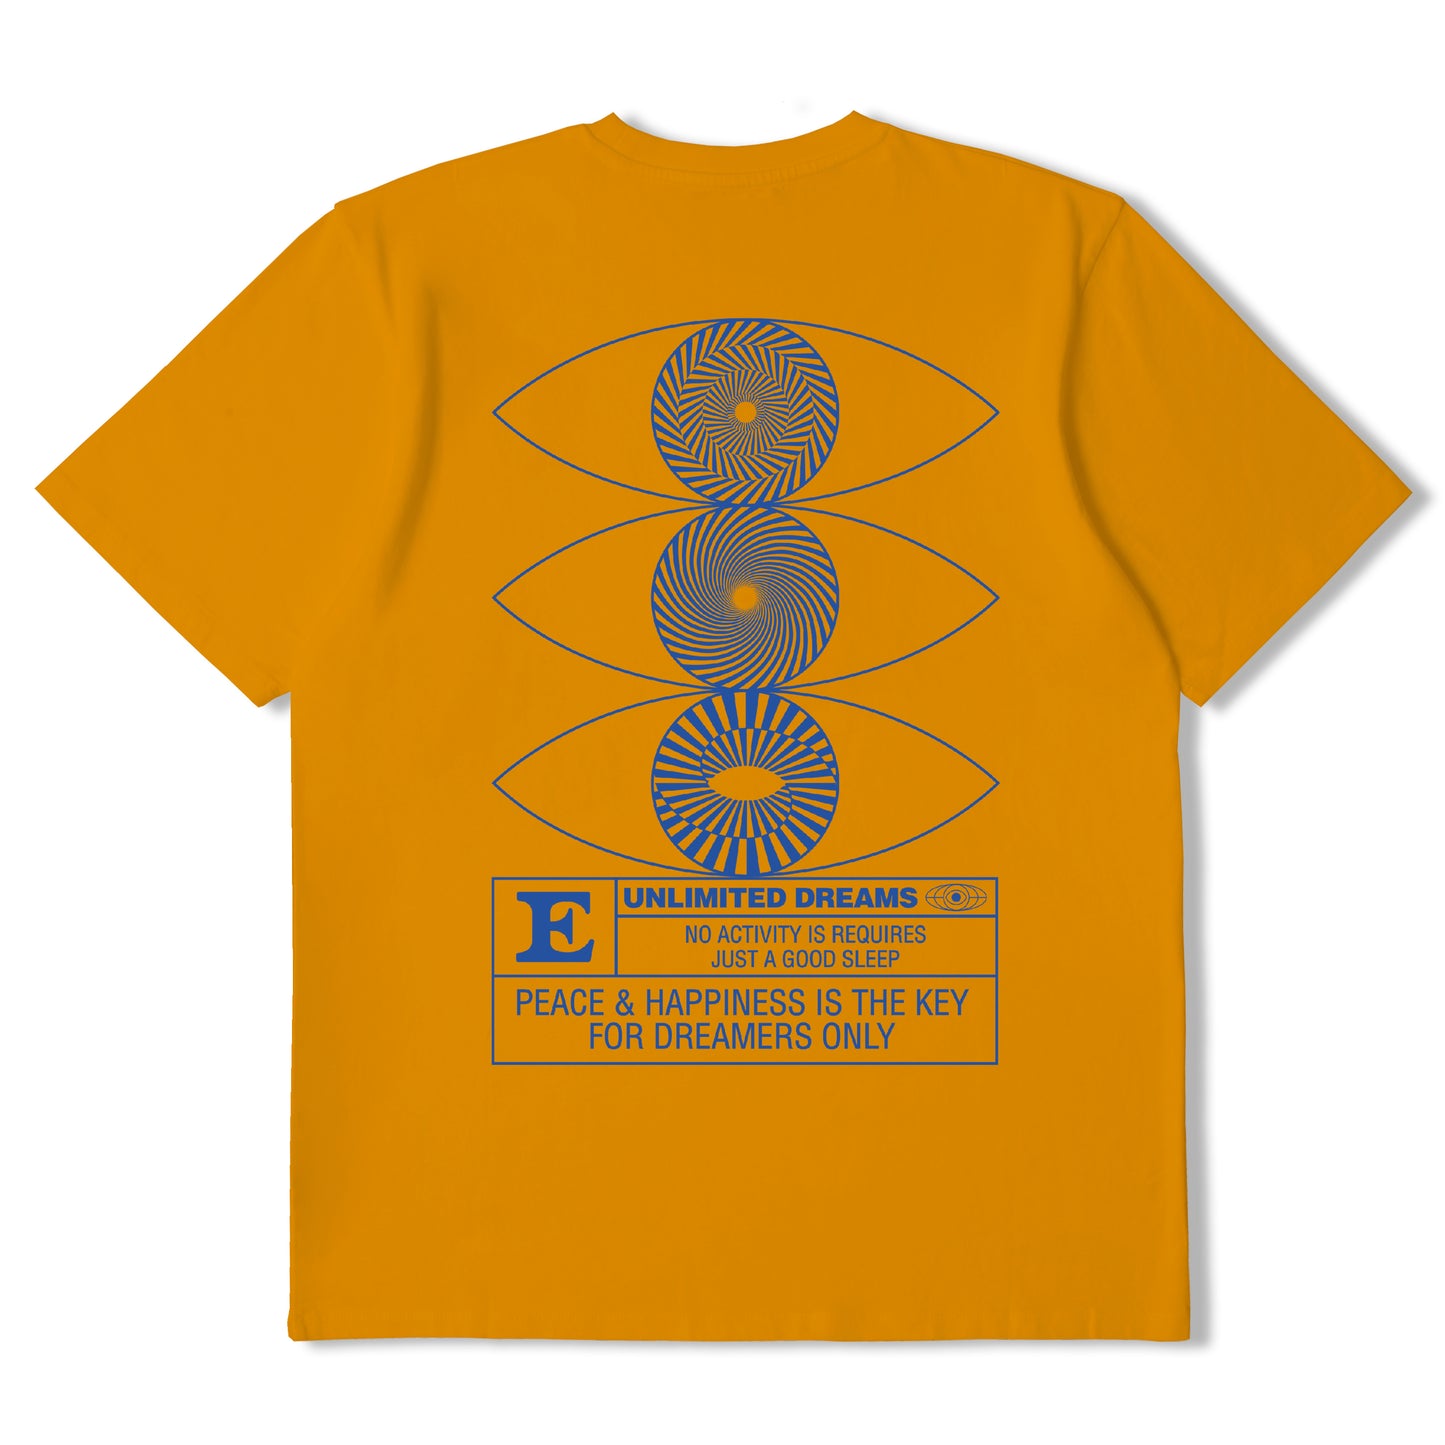 Edwin Unlimited Yume T-Shirt